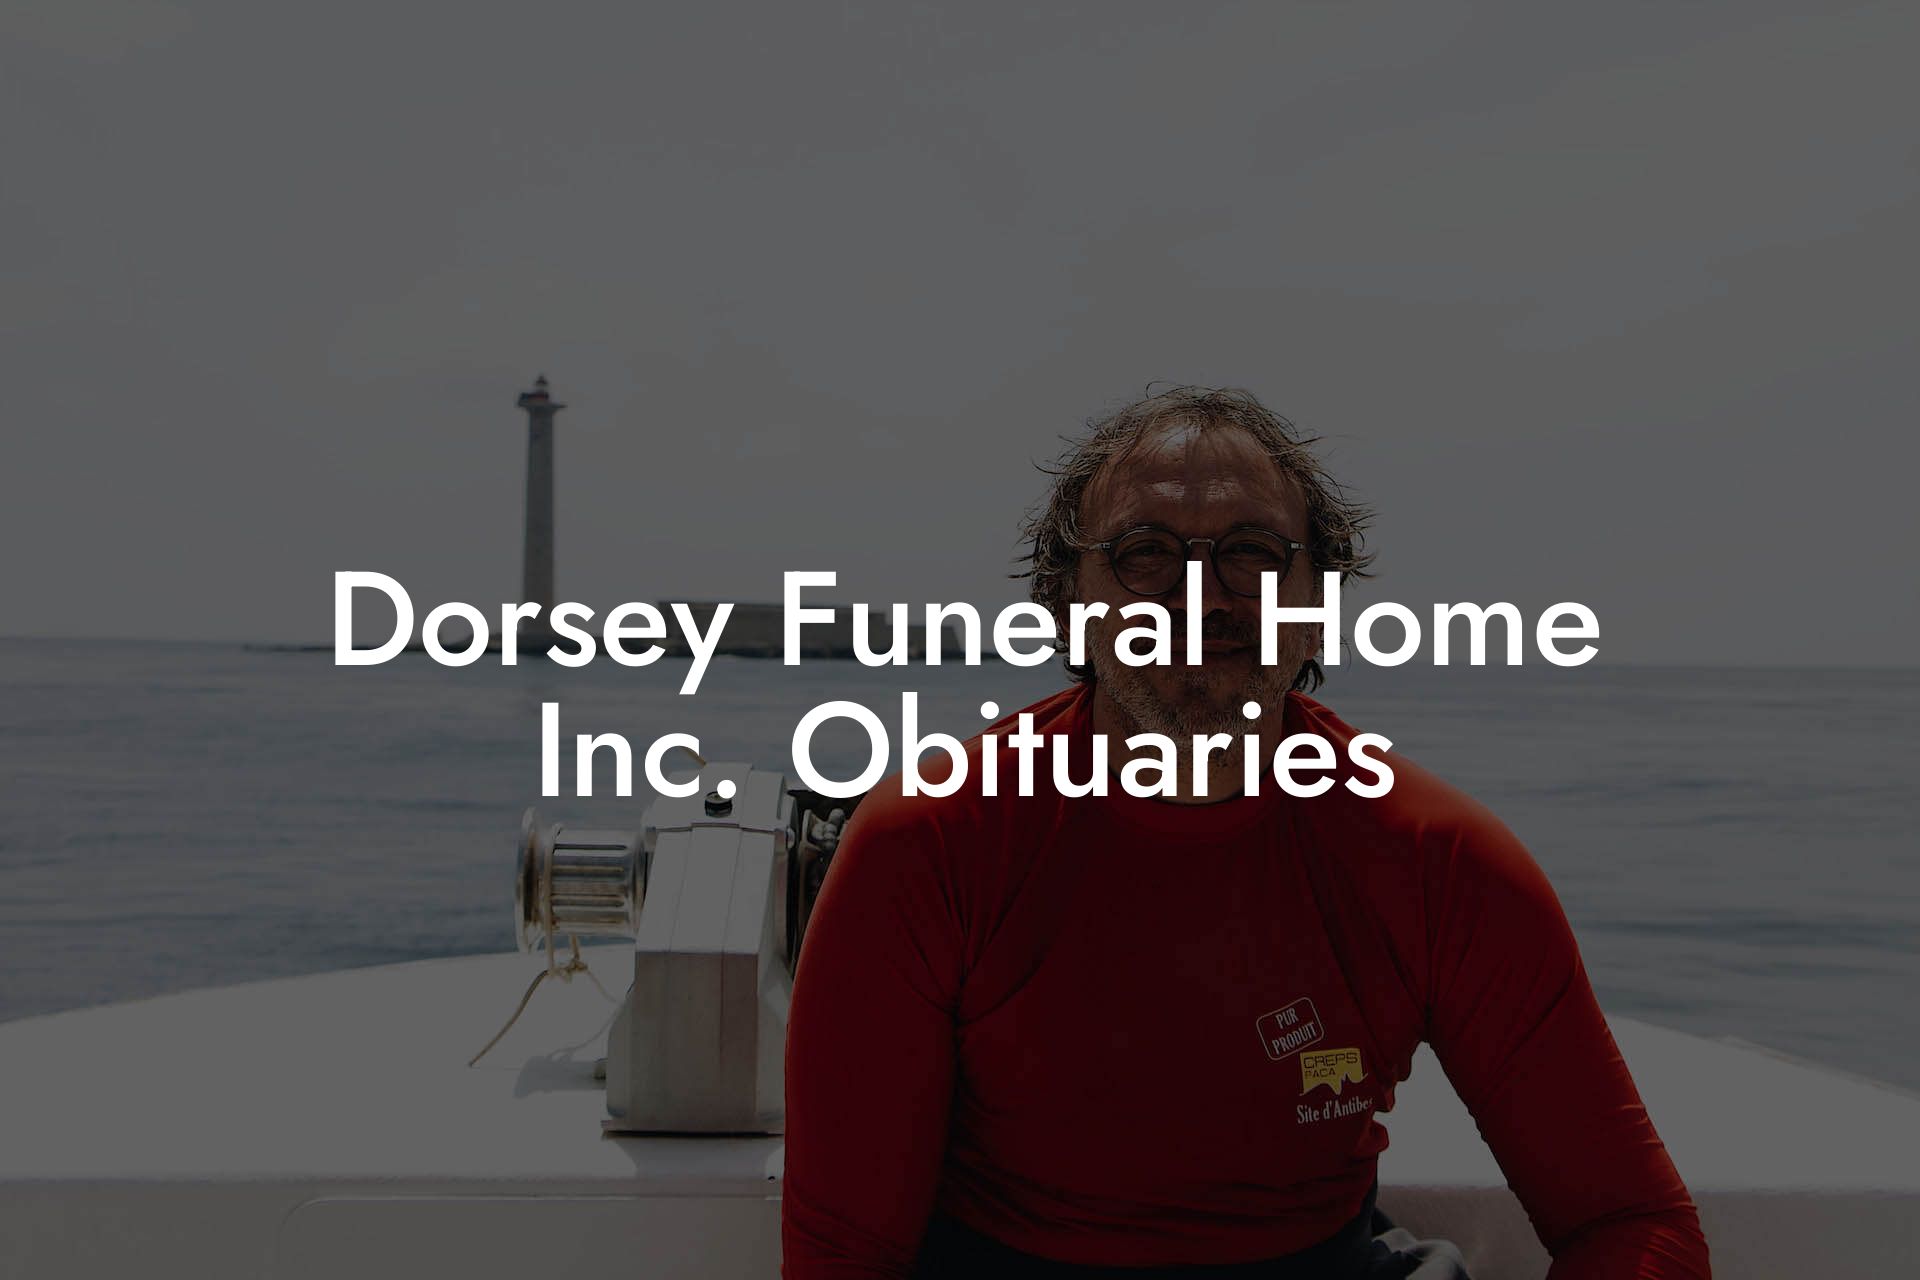 Dorsey Funeral Home Inc. Obituaries